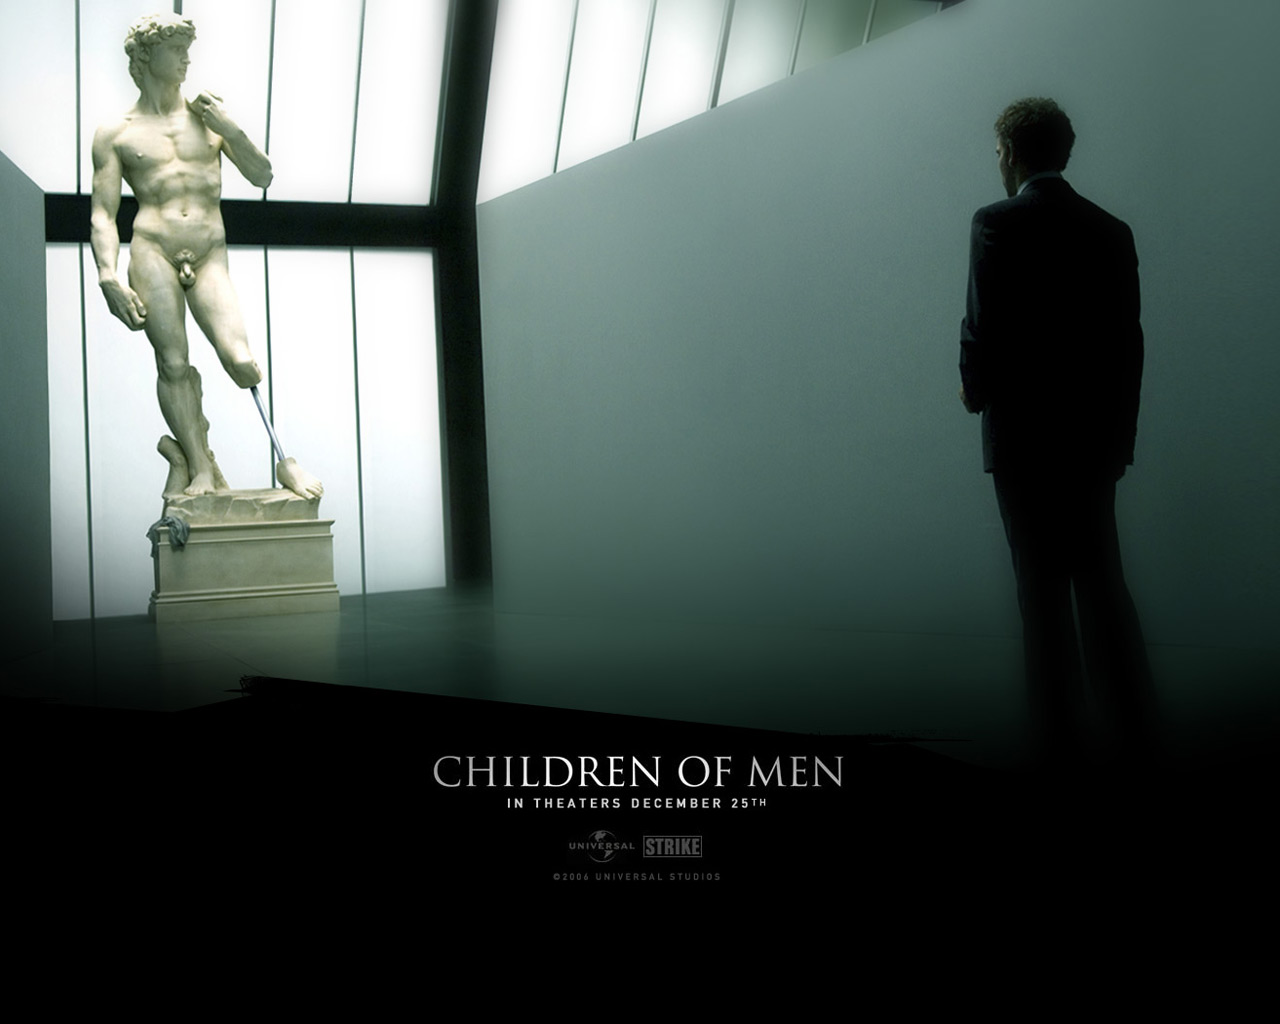 http://www.houyhnhnm.jp/blog/moriyama/images/jedi_Children_of_Men.jpg